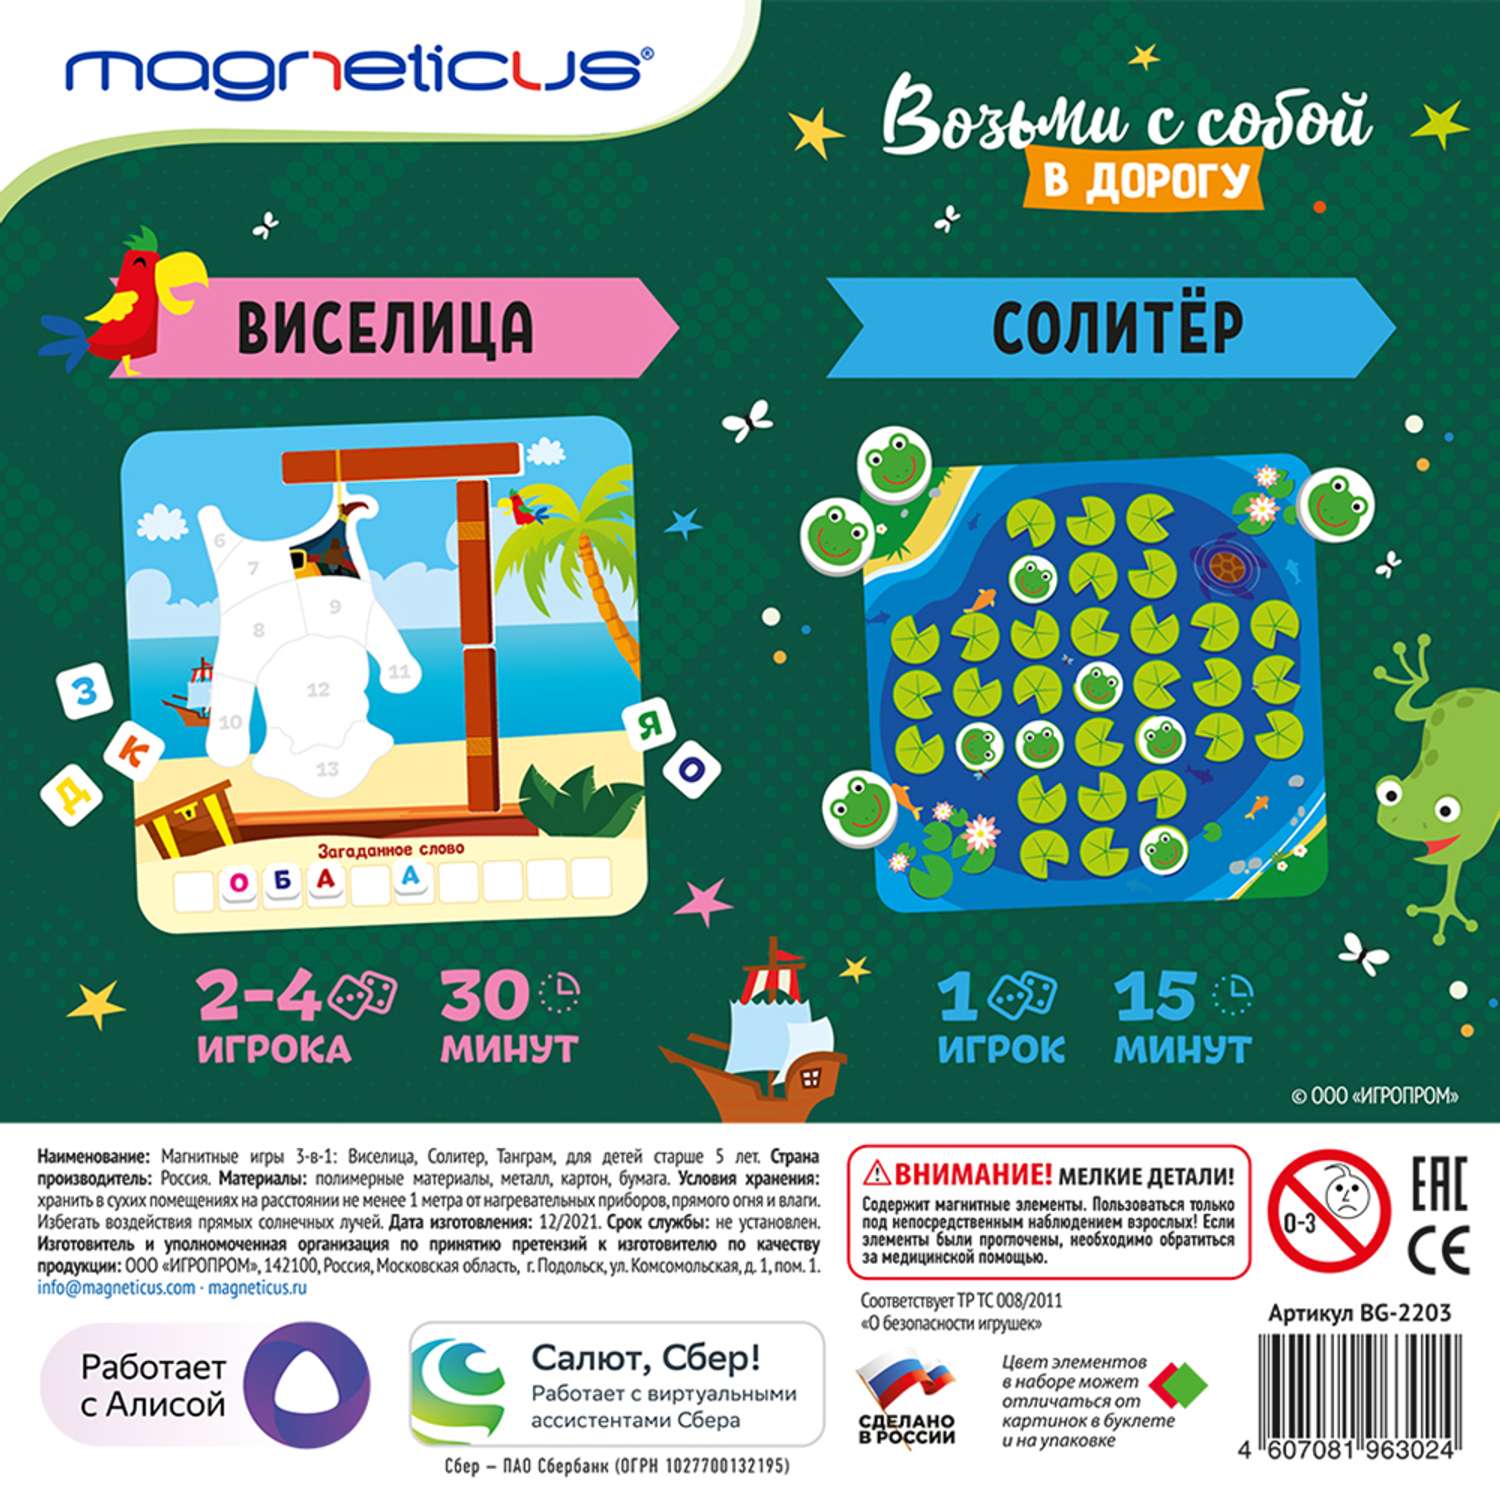 Магнитная логическая игра MAGNETICUS 3-в-1 Виселица Солитер Танграм для детей от 5 лет Работает с голосовым помощником Алиса - фото 2